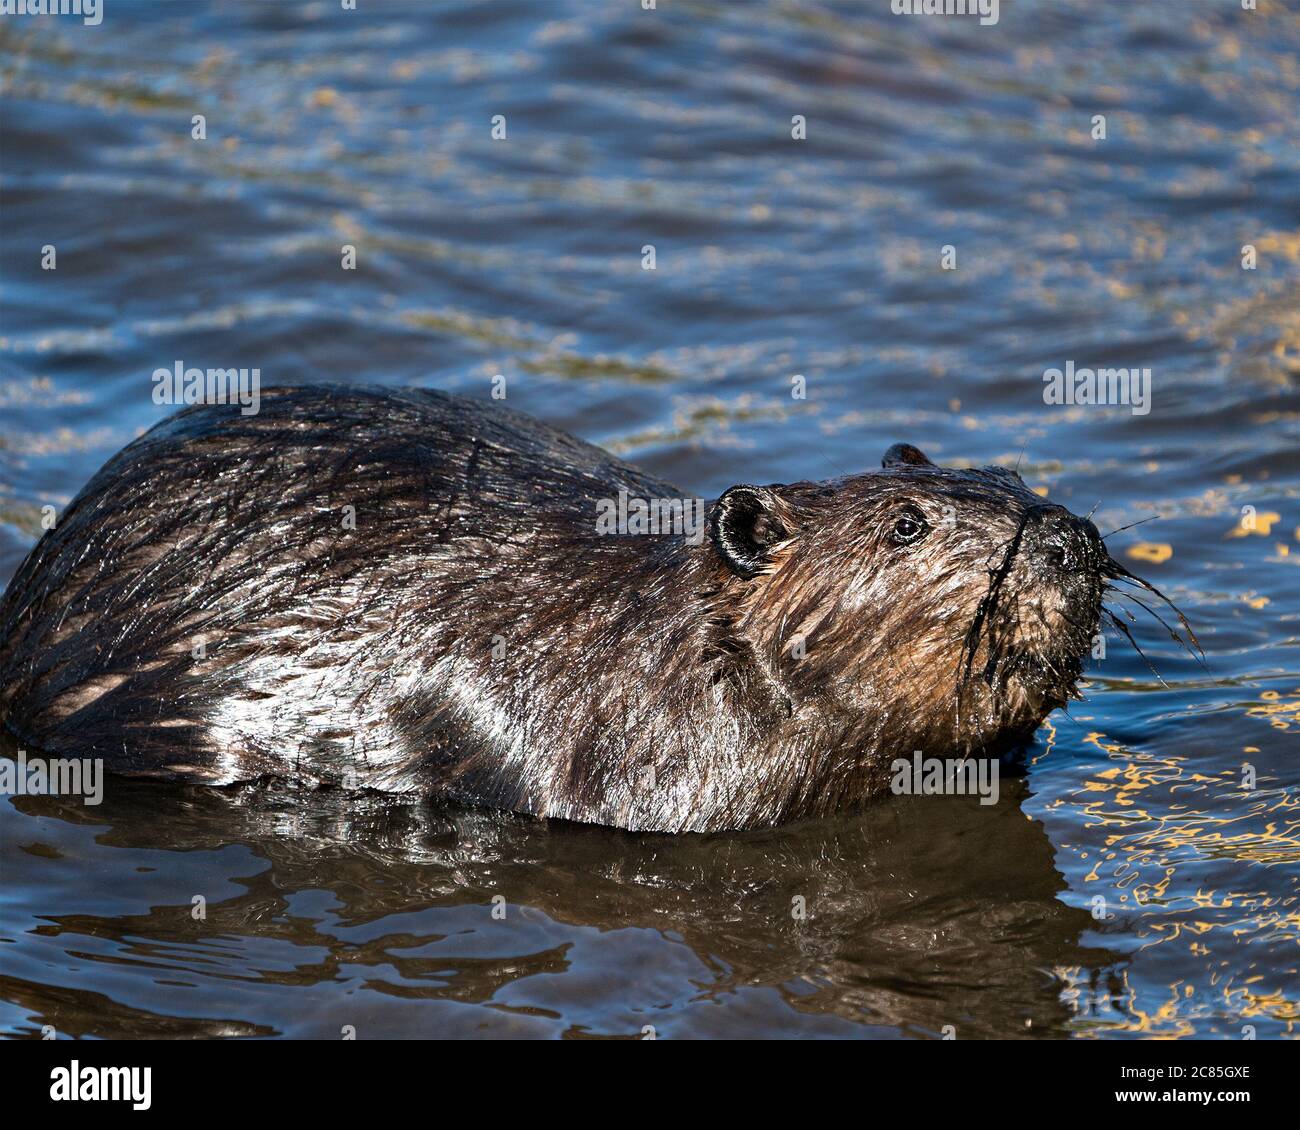 Vista ravvicinata del profilo Beaver in acqua con il suo cappotto di pelliccia marrone, il naso, l'occhio, le orecchie, guardando a destra, nel suo habitat e ambiente. Foto Stock